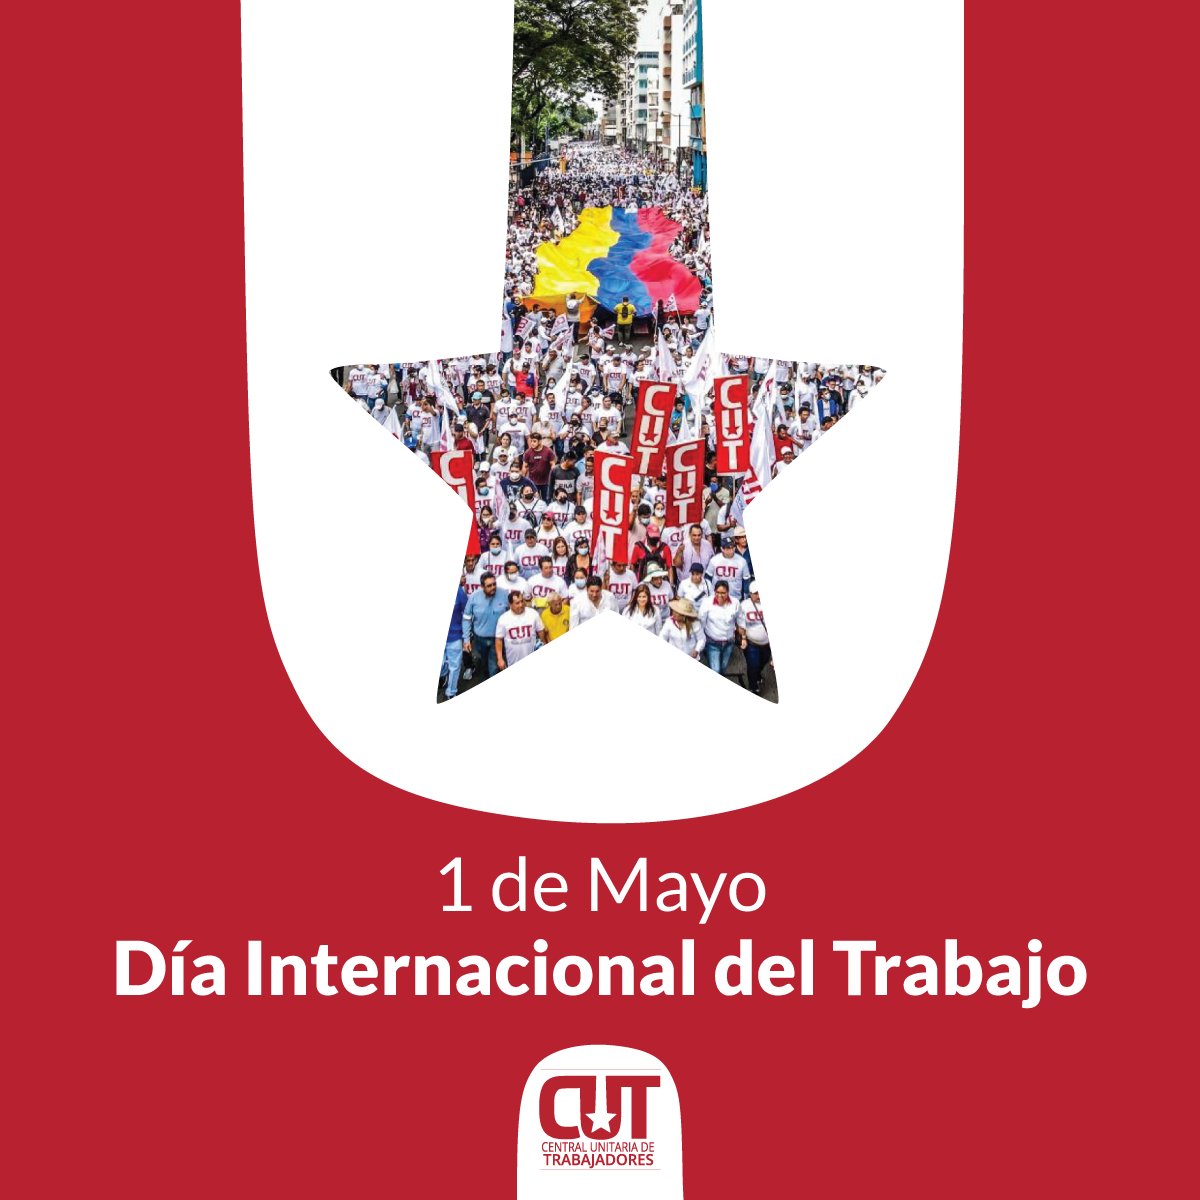 Hoy conmemoramos el #1deMayo reconociendo la labor de la clase trabajadora y reafirmando nuestra lucha por un mundo laboral más igualitario. ¡Marchamos por un Ecuador con justicia laboral! 🙌🏼